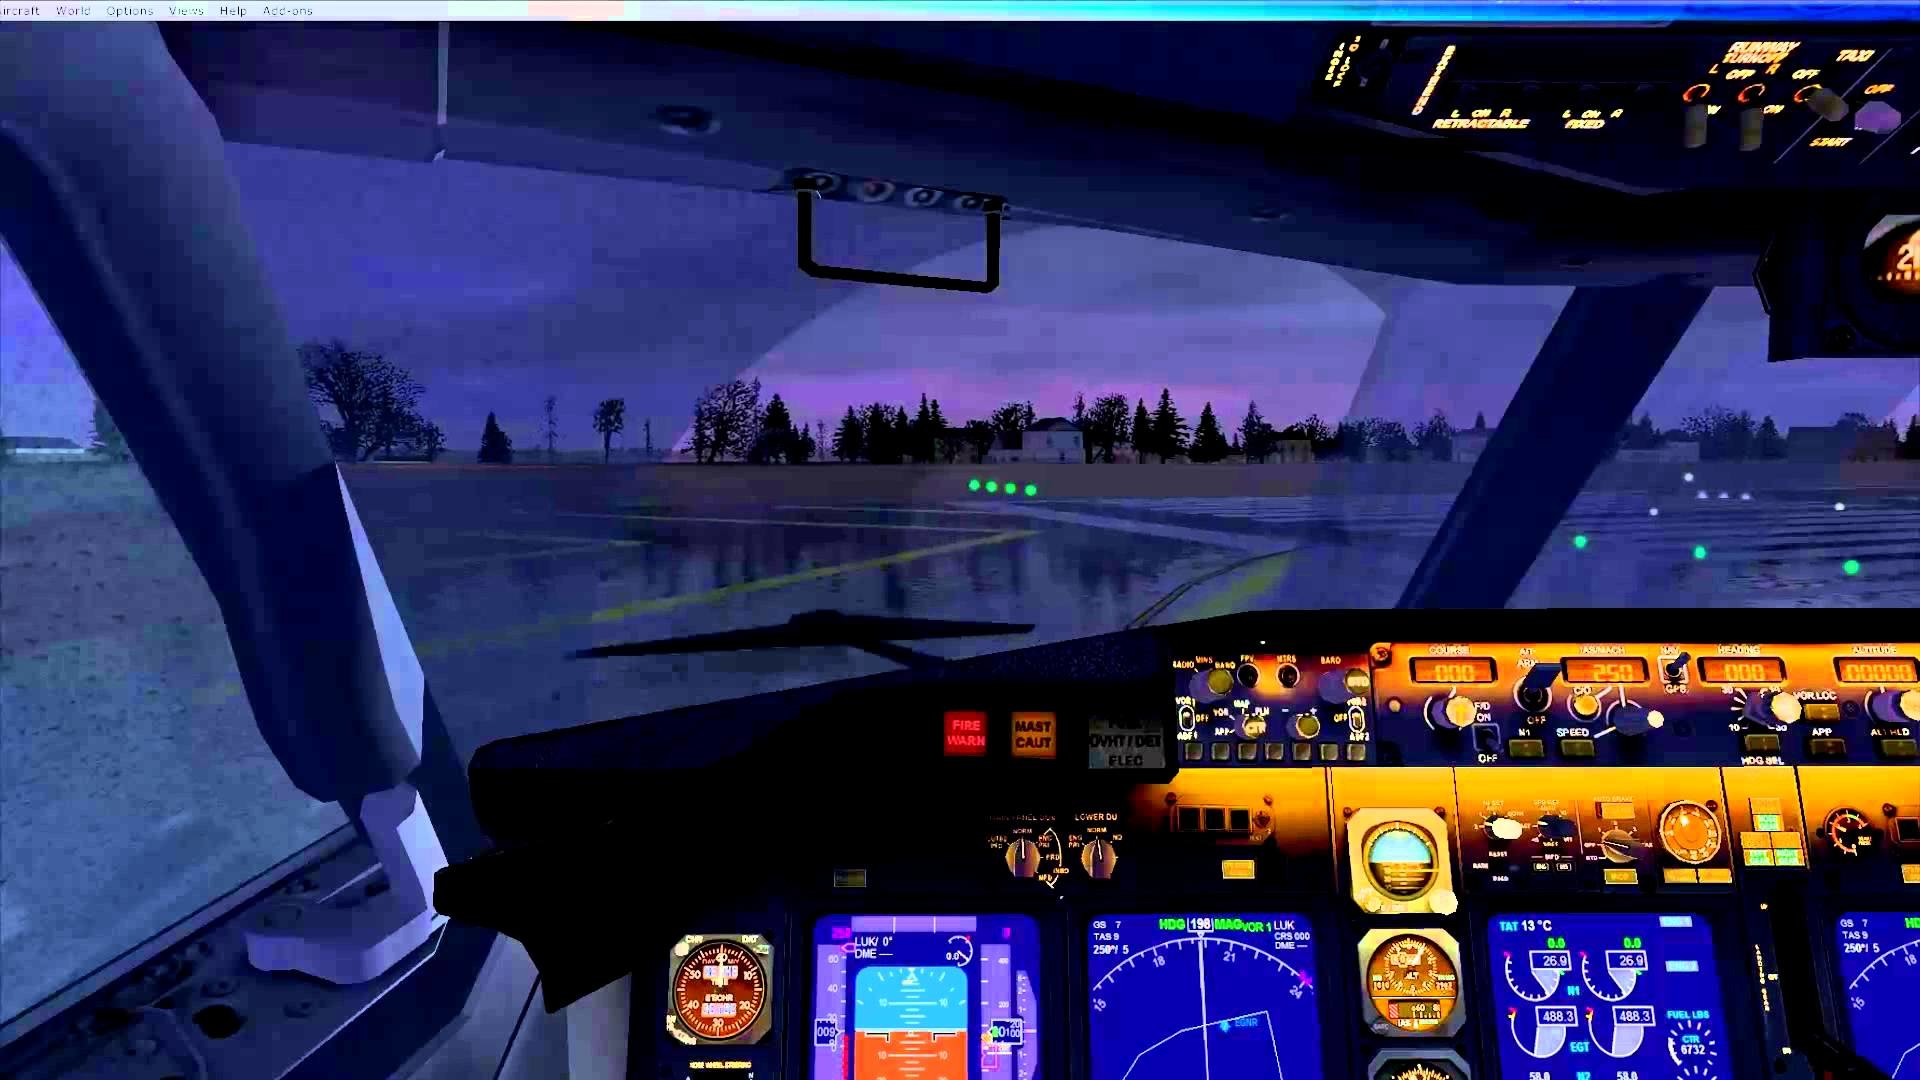 FSX Default Boeing 737 800 Cockpit Update Test Video